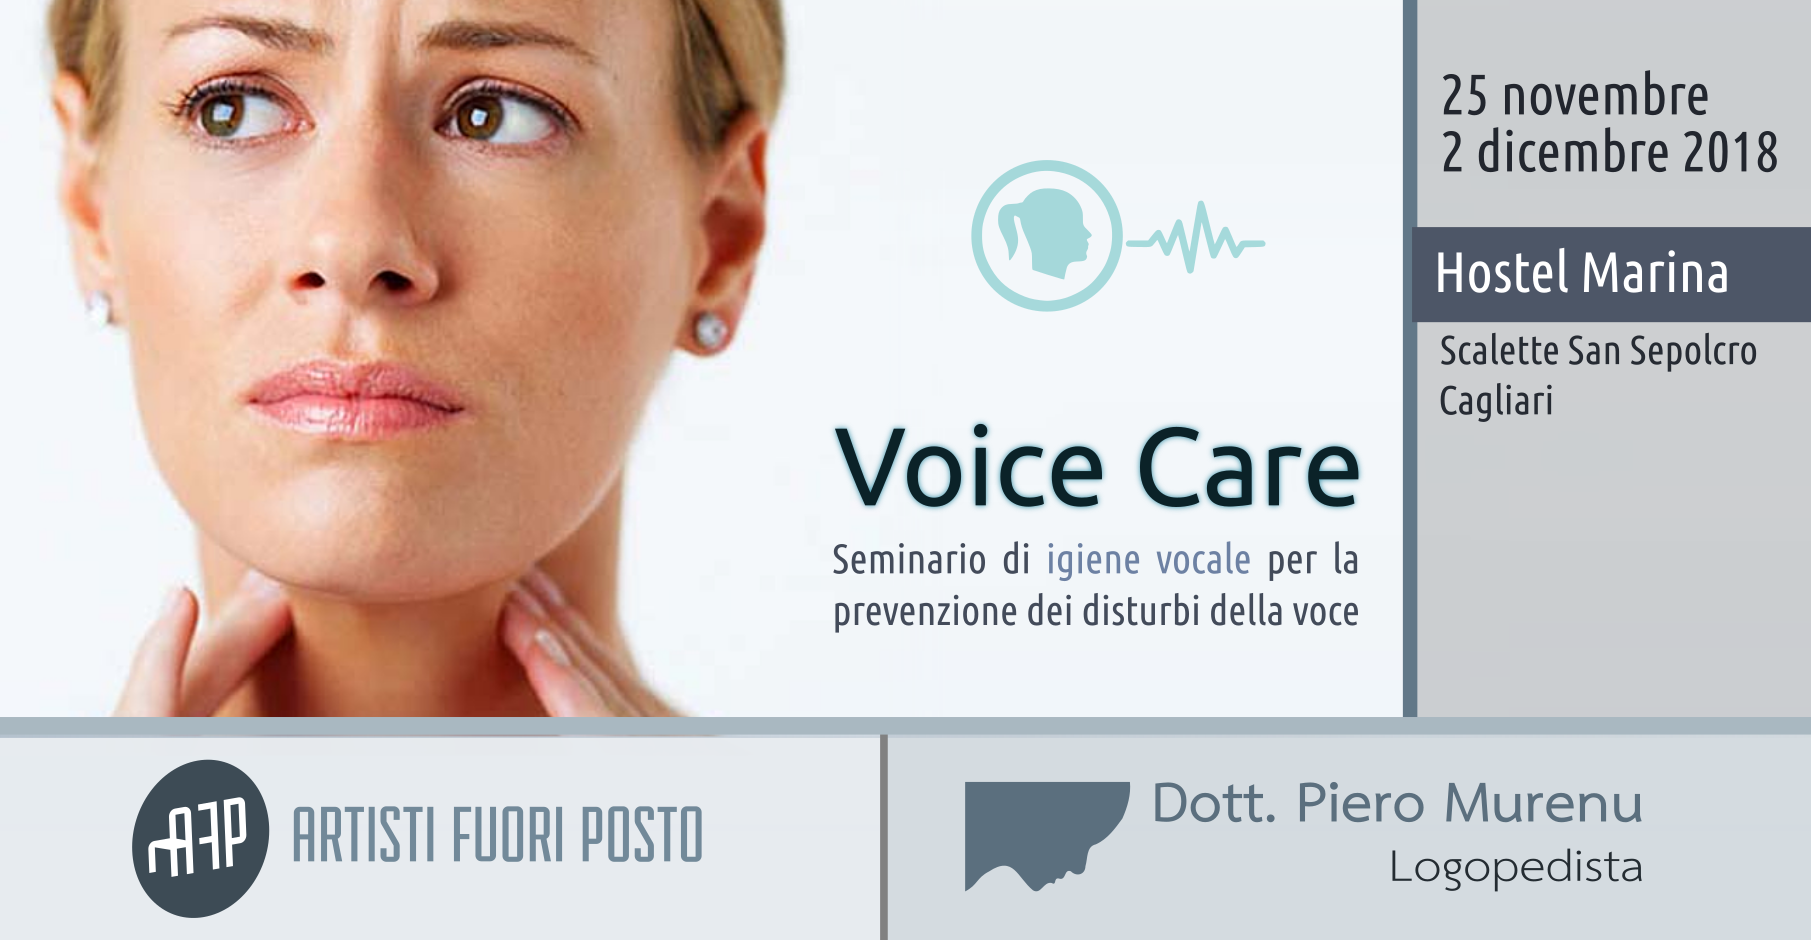 Voice Care - corso di igiene vocale